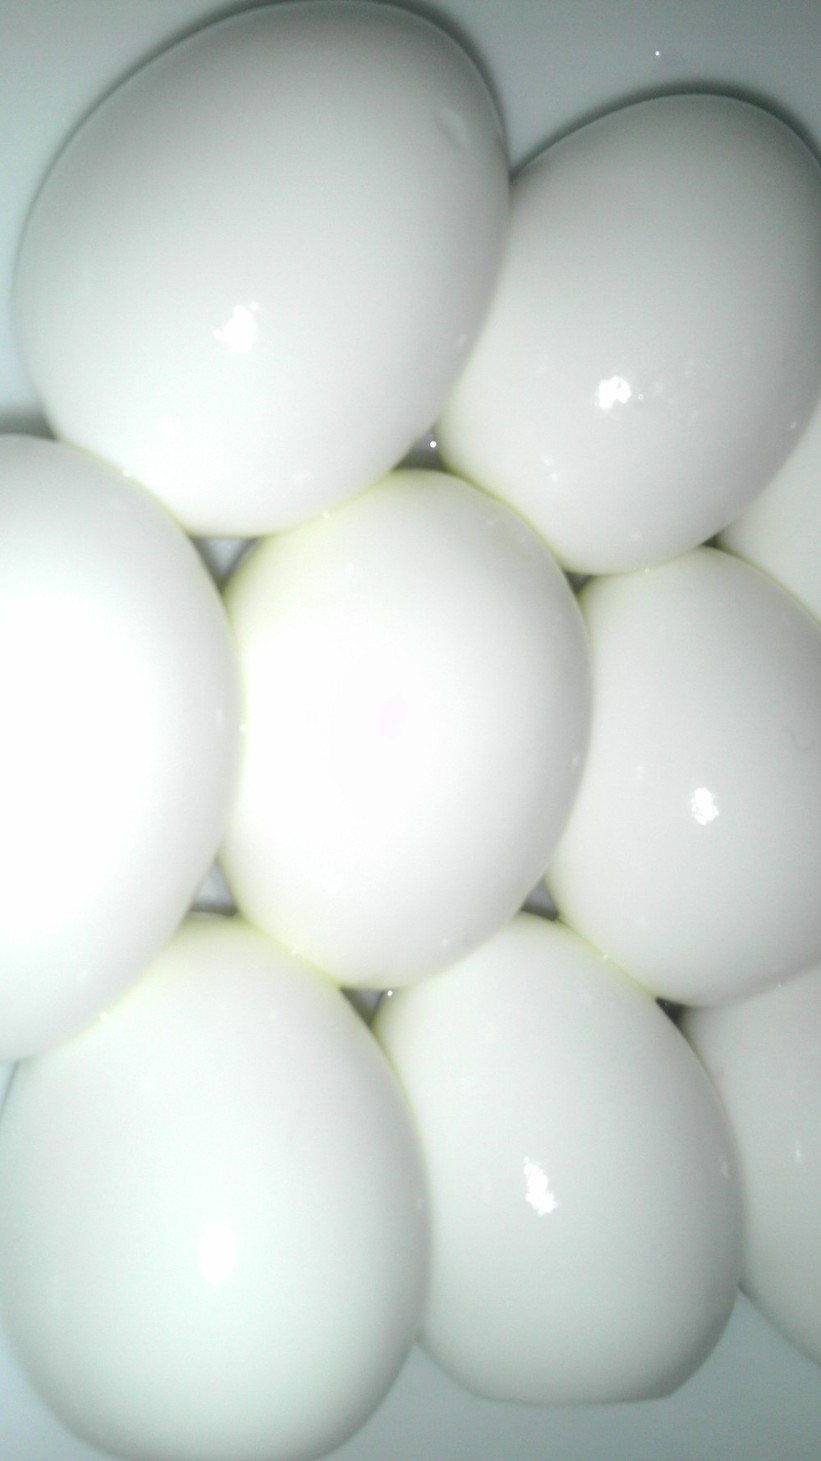 超簡単★ゆで卵の綺麗な剥き方の画像